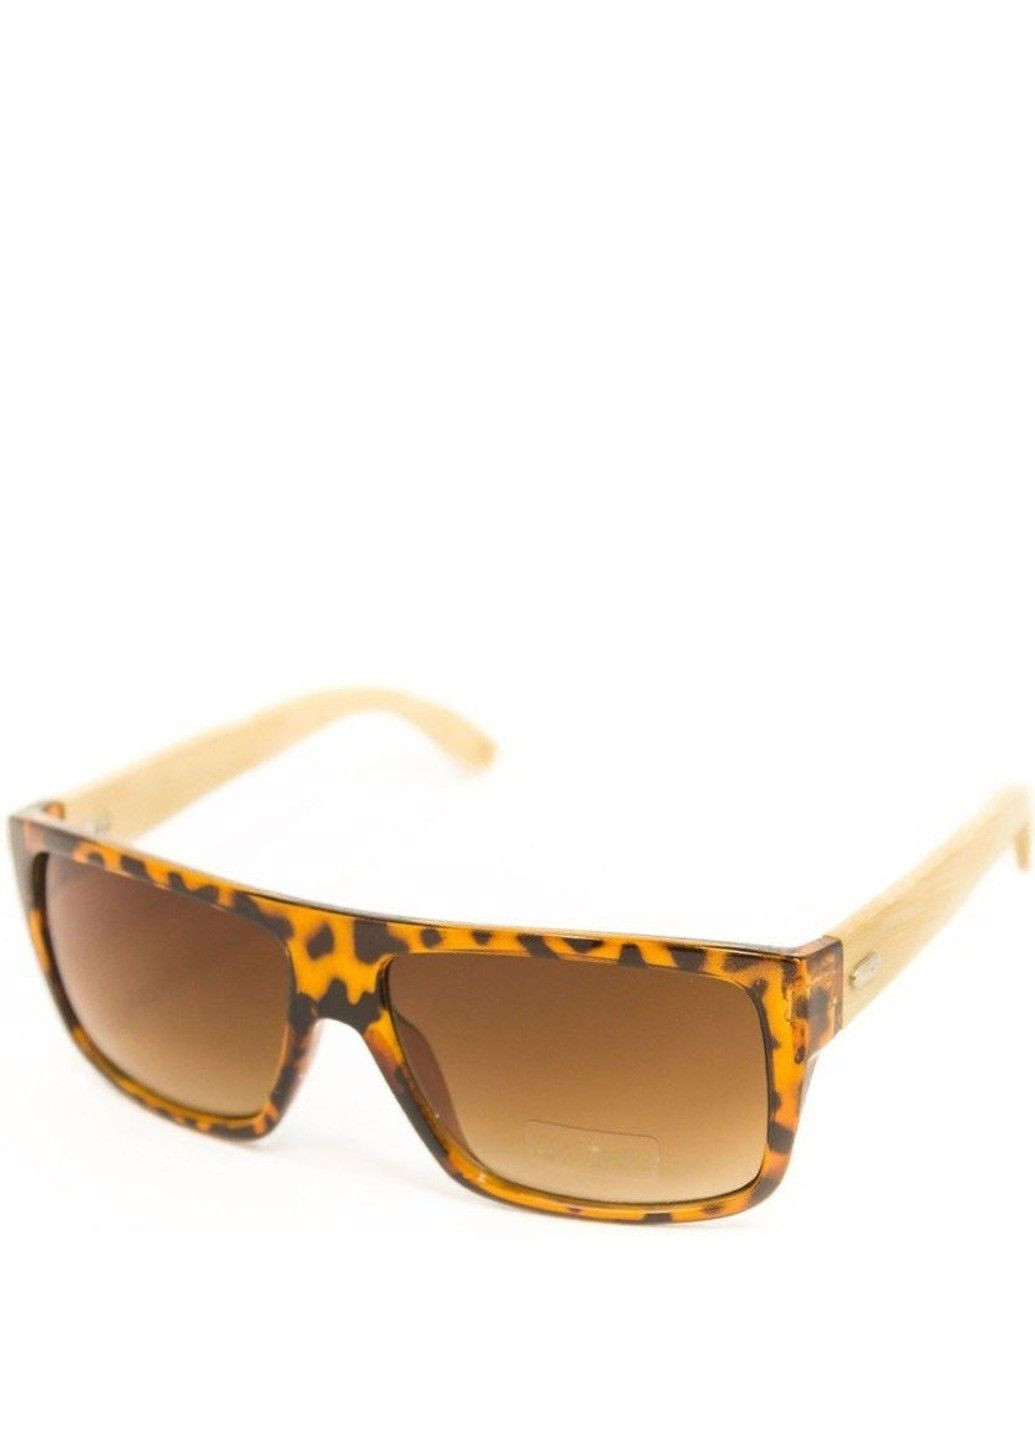 Сонцезахисні окуляри унісекс з дерев'яними дужками BR-S (292755535)